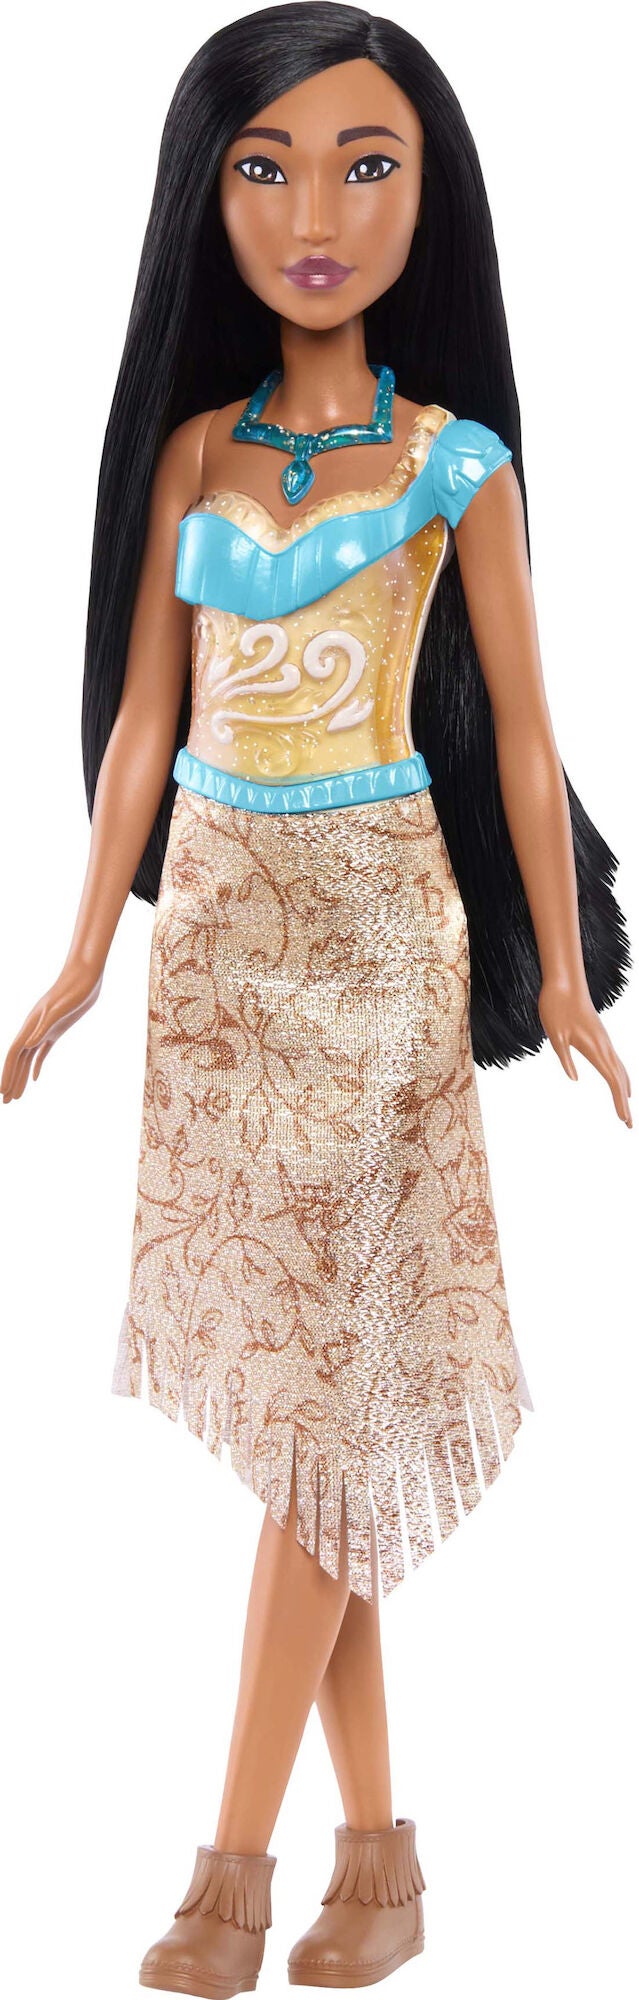 Disney Prinzessinnen Pocahontas Puppe 28cm von Disney Prinzessin